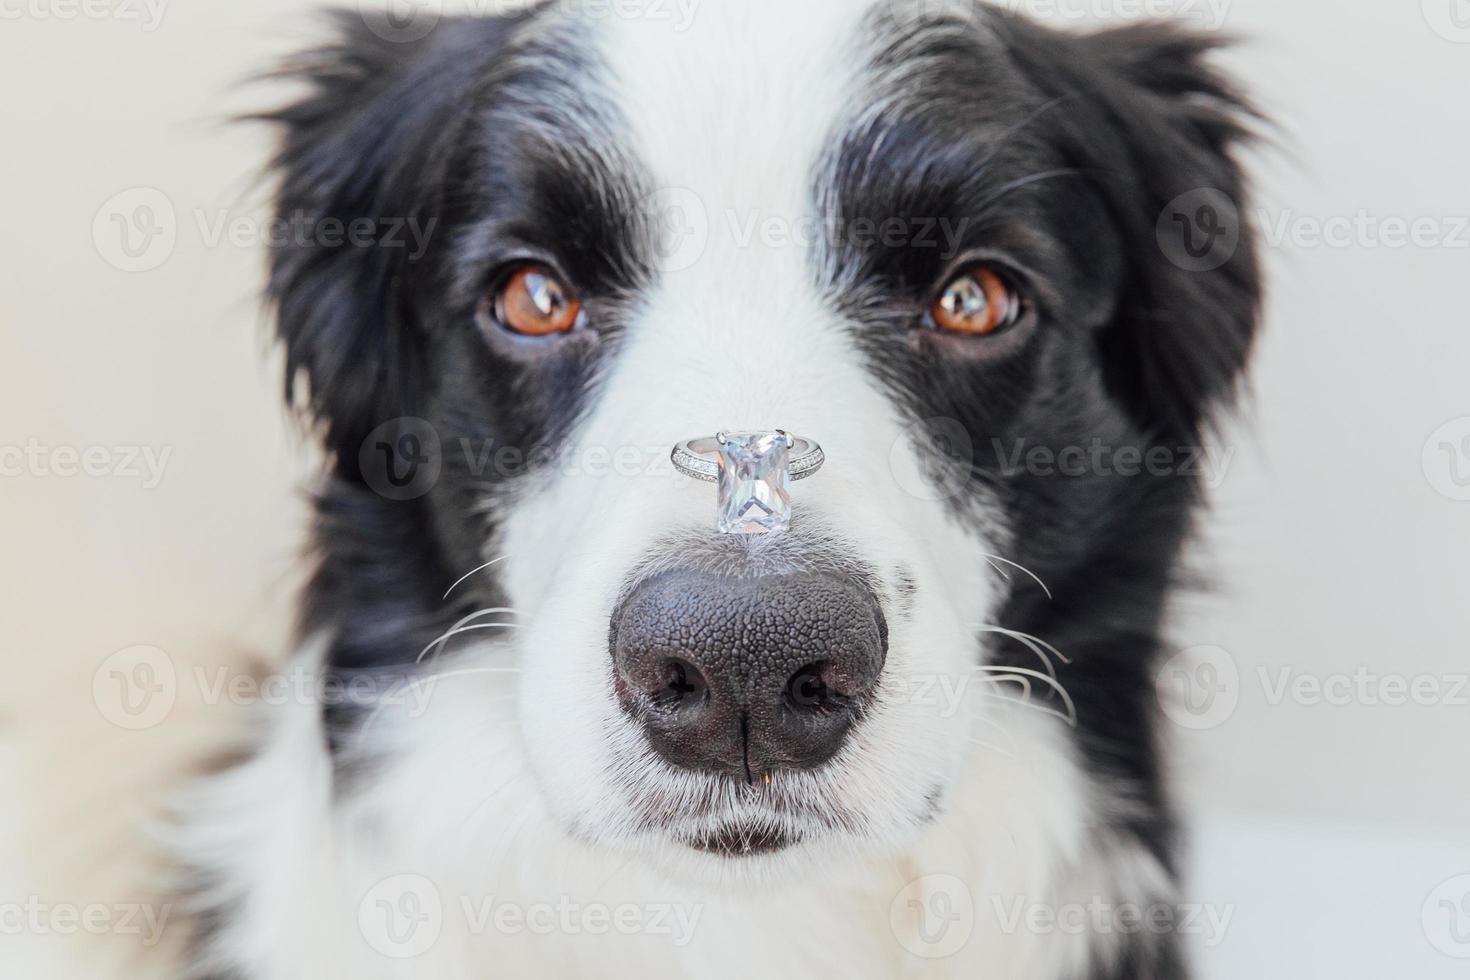 Te casarías conmigo. divertido retrato de lindo cachorro border collie sosteniendo anillo de bodas en la nariz aislado sobre fondo blanco. compromiso, matrimonio, concepto de propuesta foto